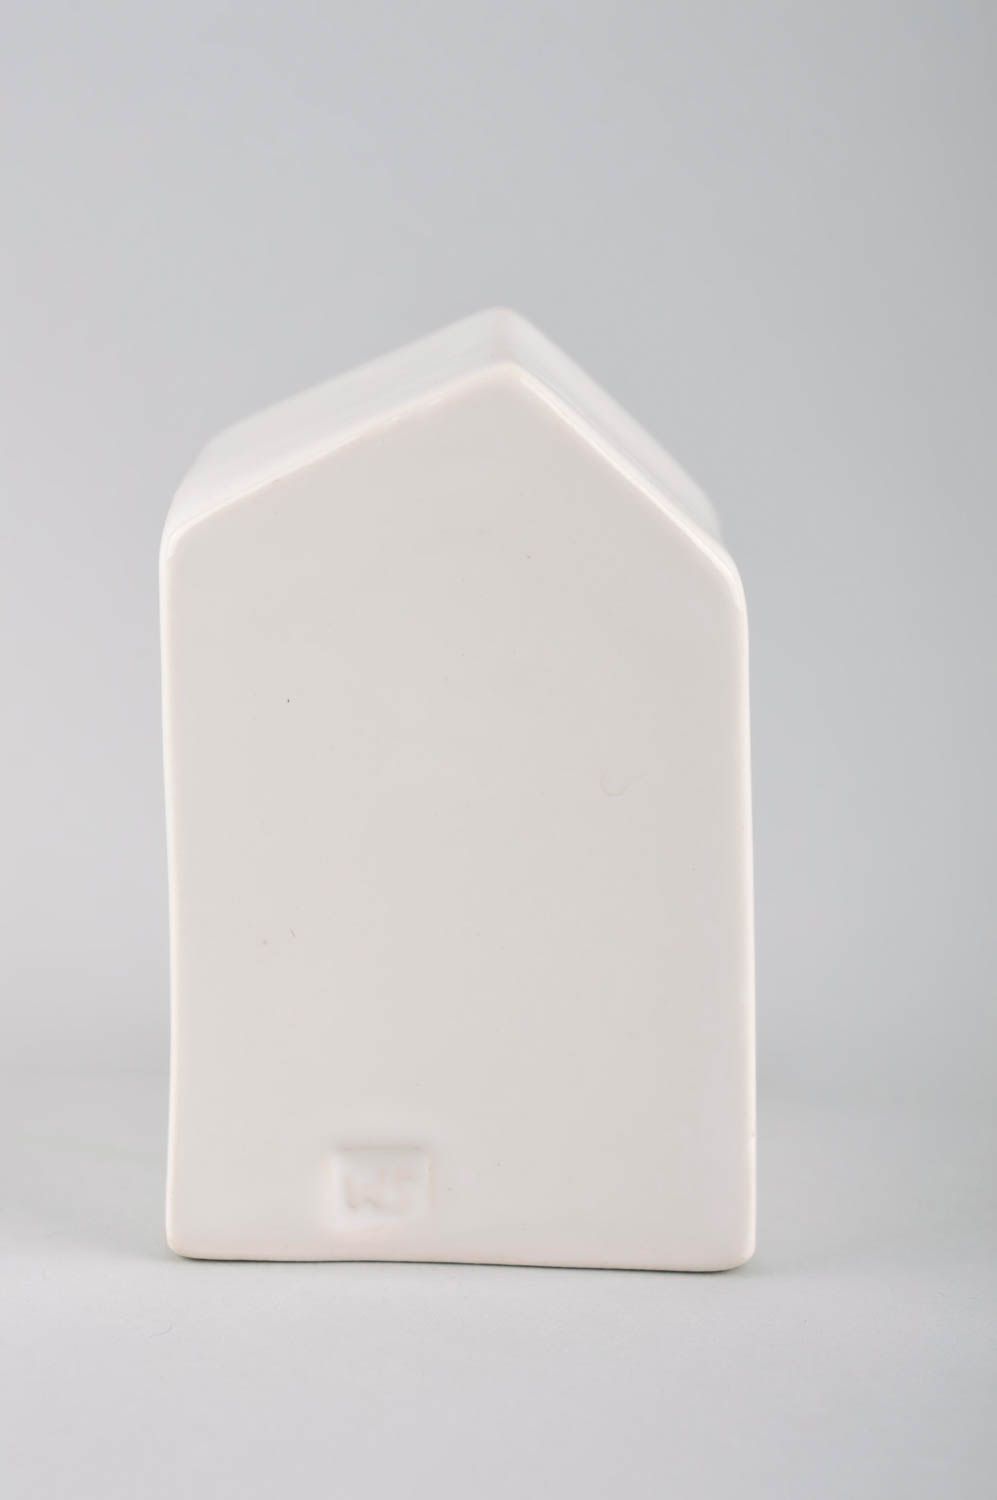 Фигурка из глины подарок ручной работы статуэтка из глины белая в виде домика фото 4